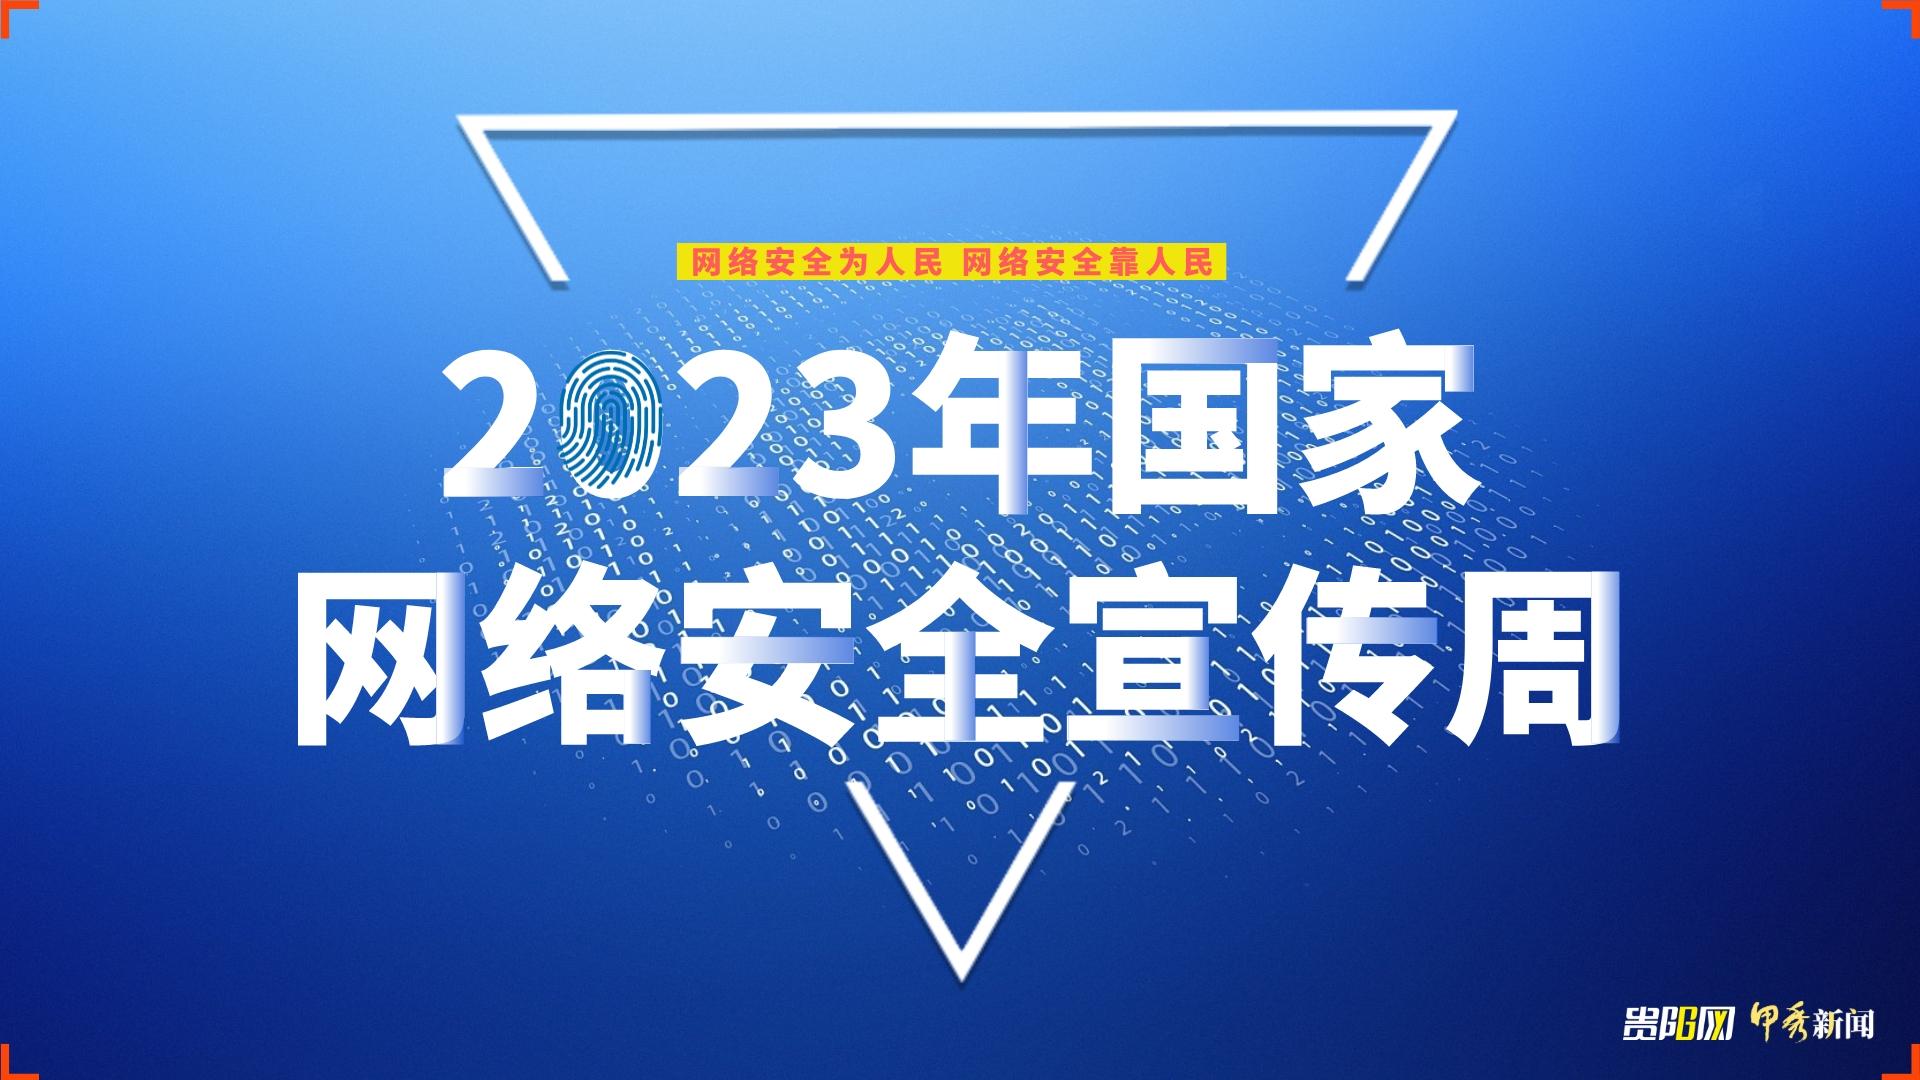 2023年国家网络安全宣传周贵阳贵安活动正式启动